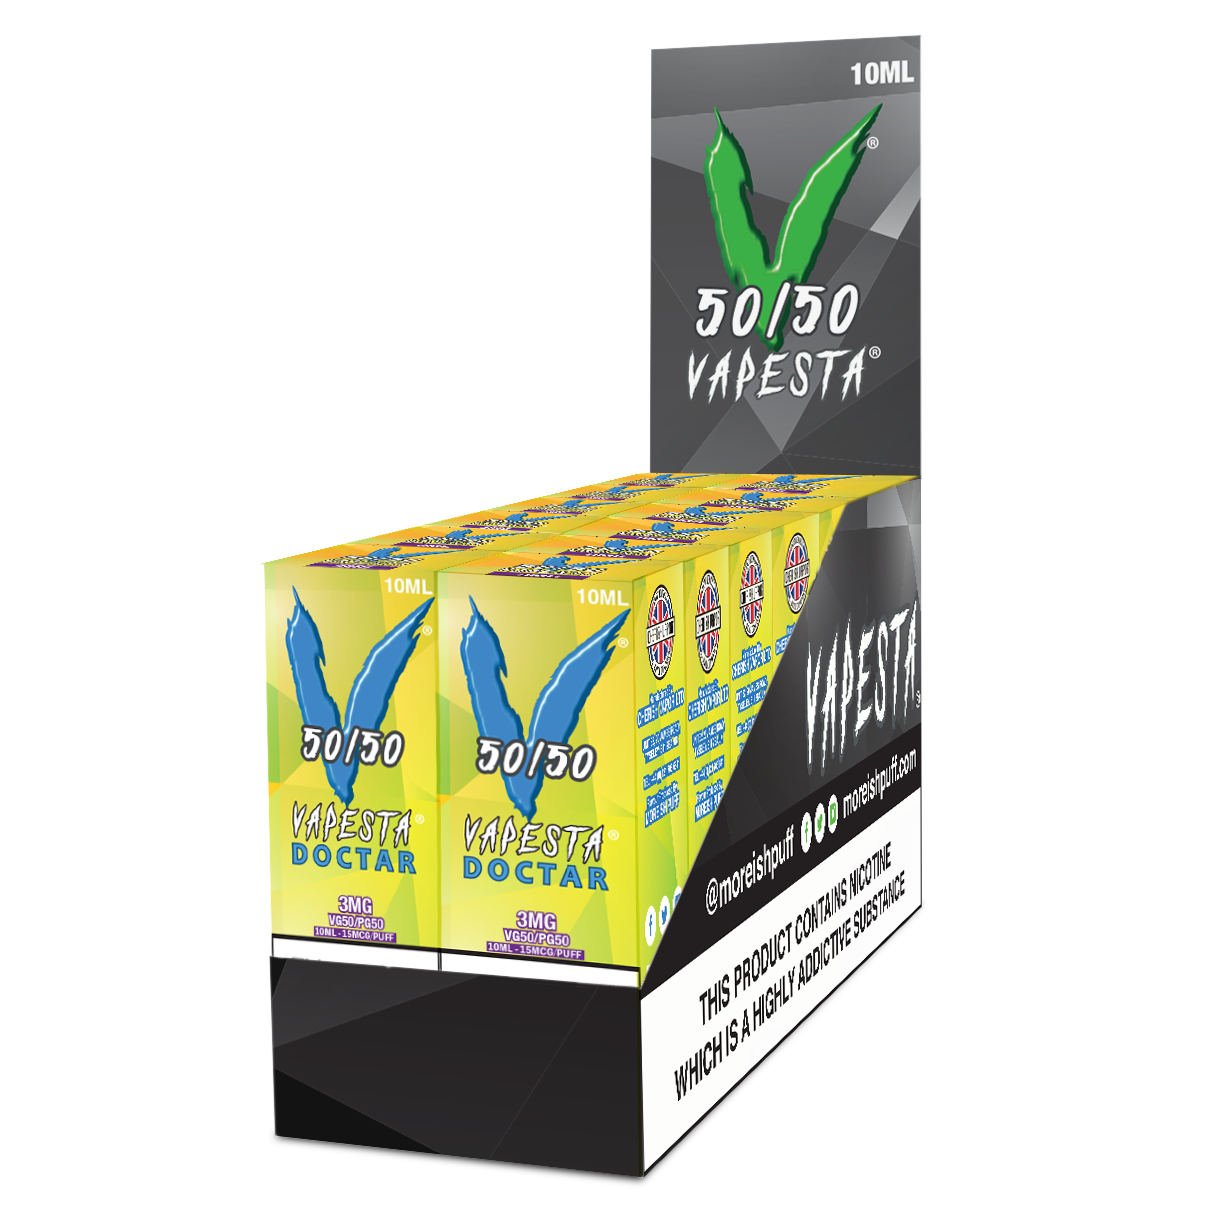 Vapesta 50/50 10ml E-Liquid Pack of 12